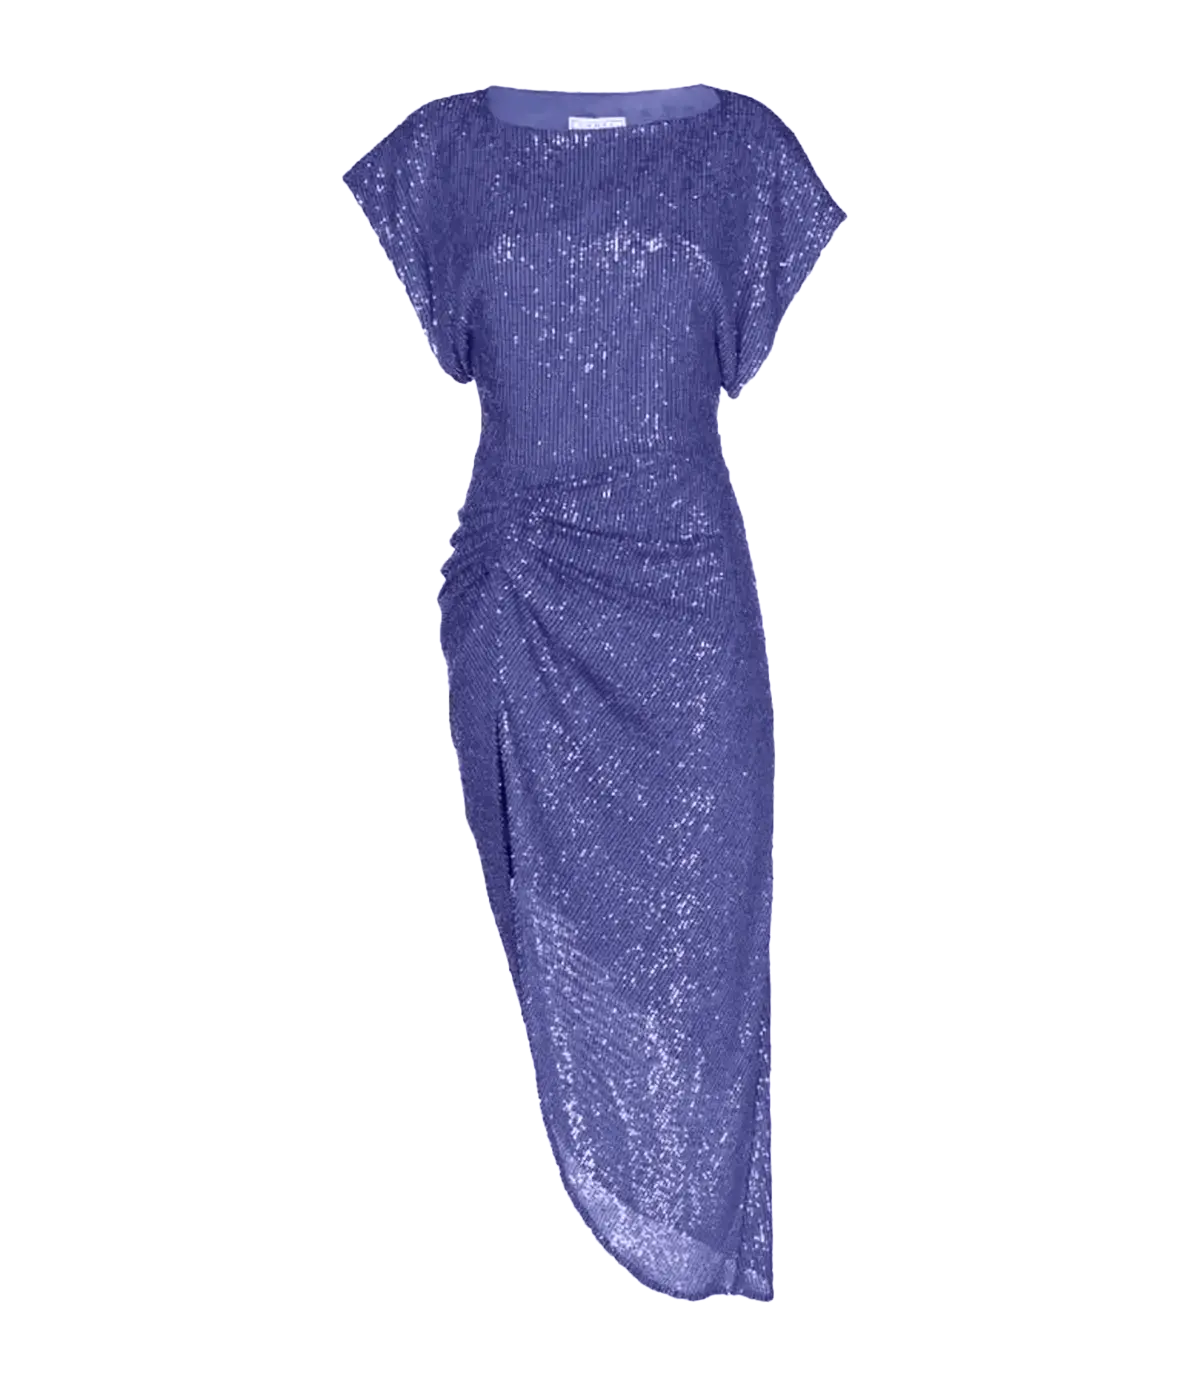 Bercot Dress in Lavendar Blue